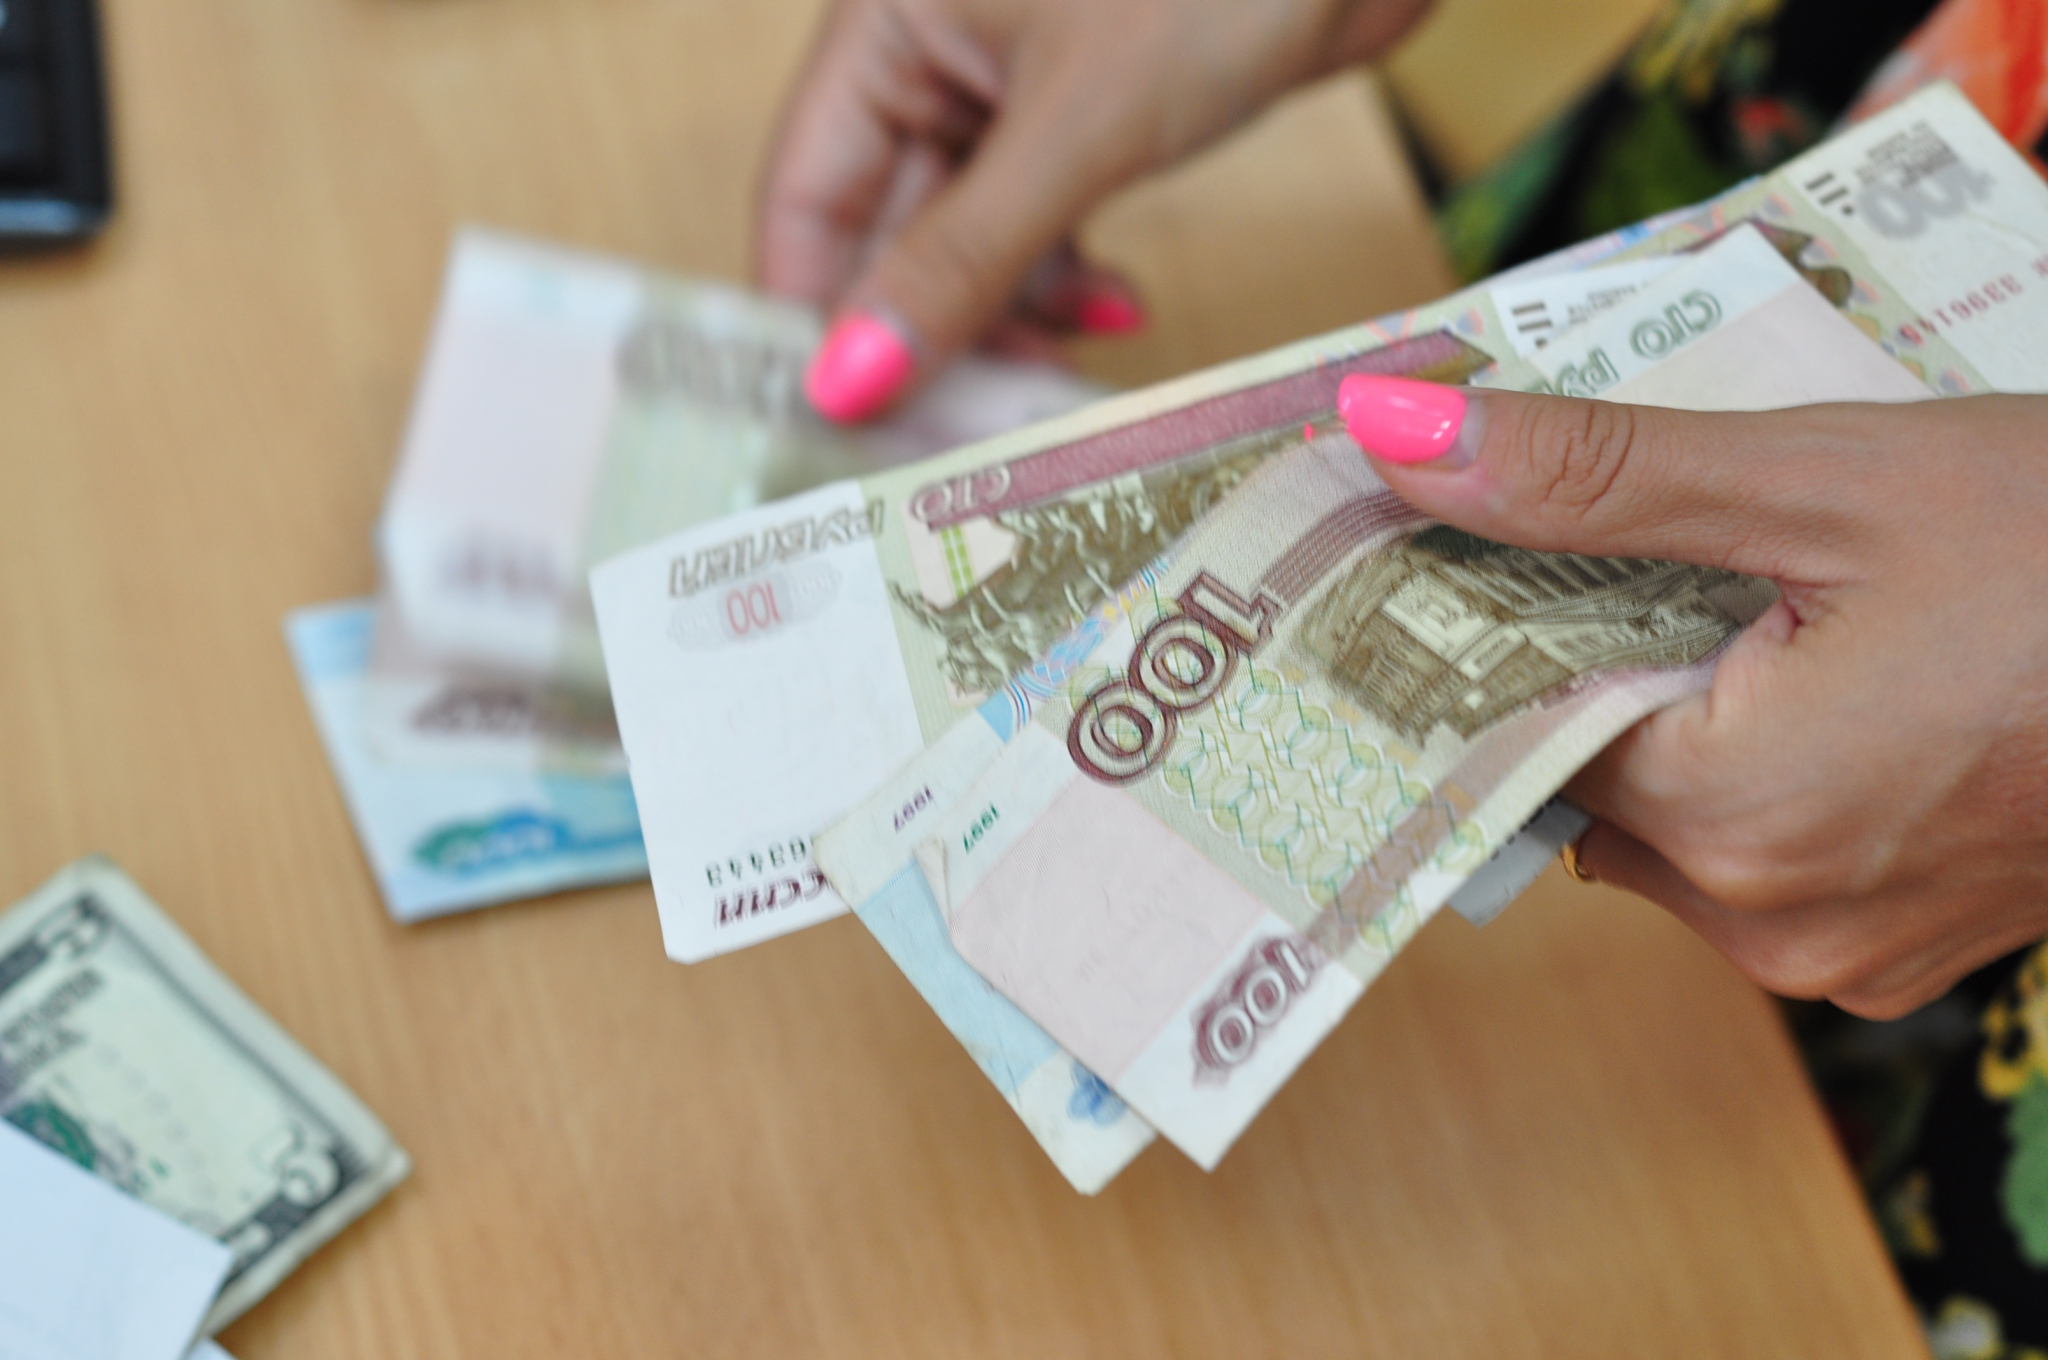 Предприниматель из Йошкар-Олы пытался скрыть больше 10 миллионов рублей